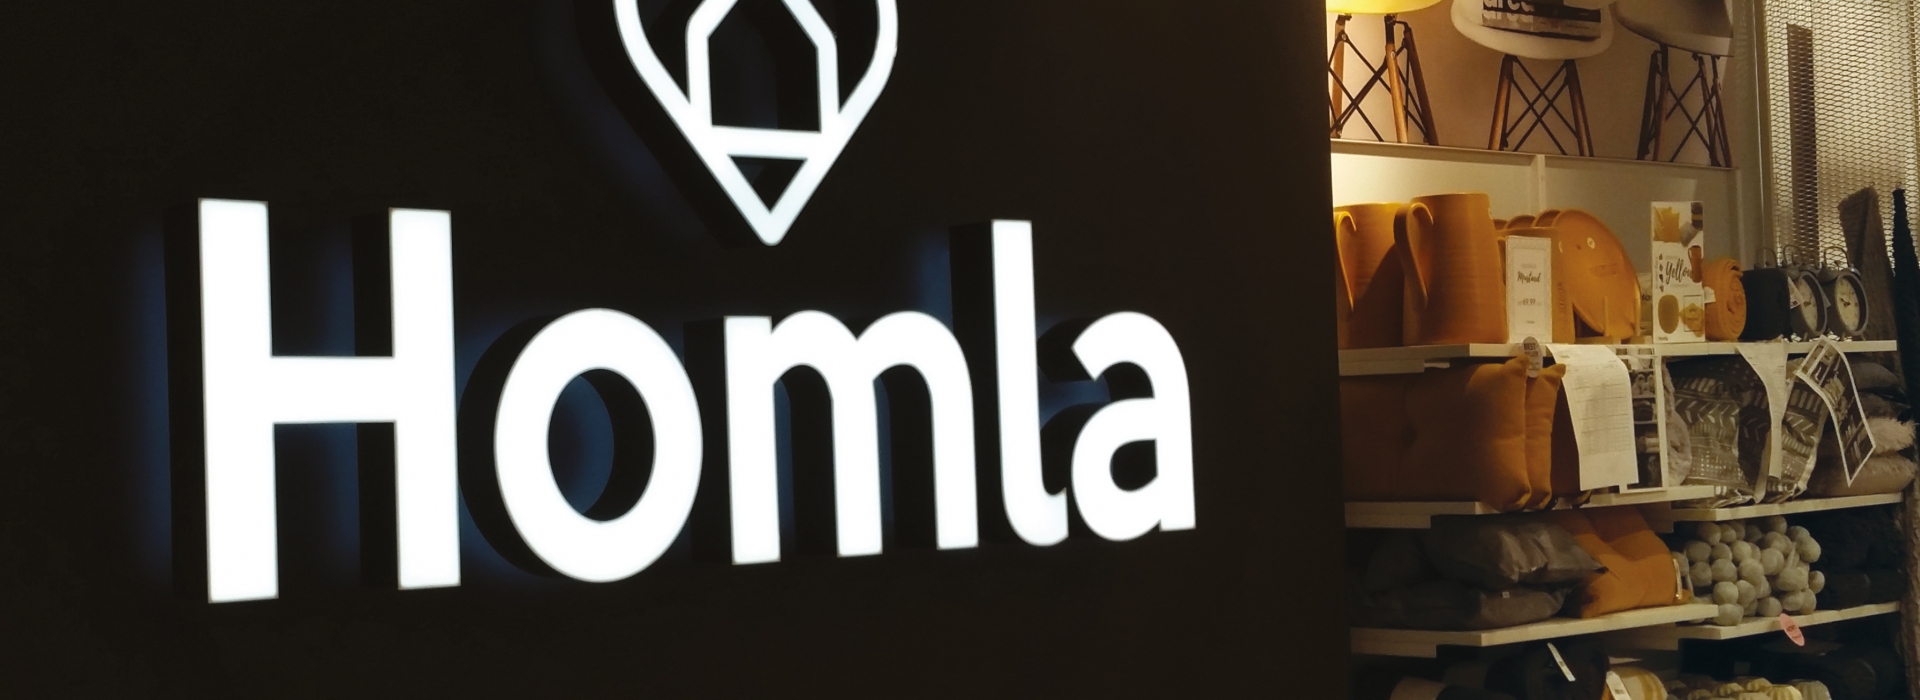 Homla - illuminated spatial logo